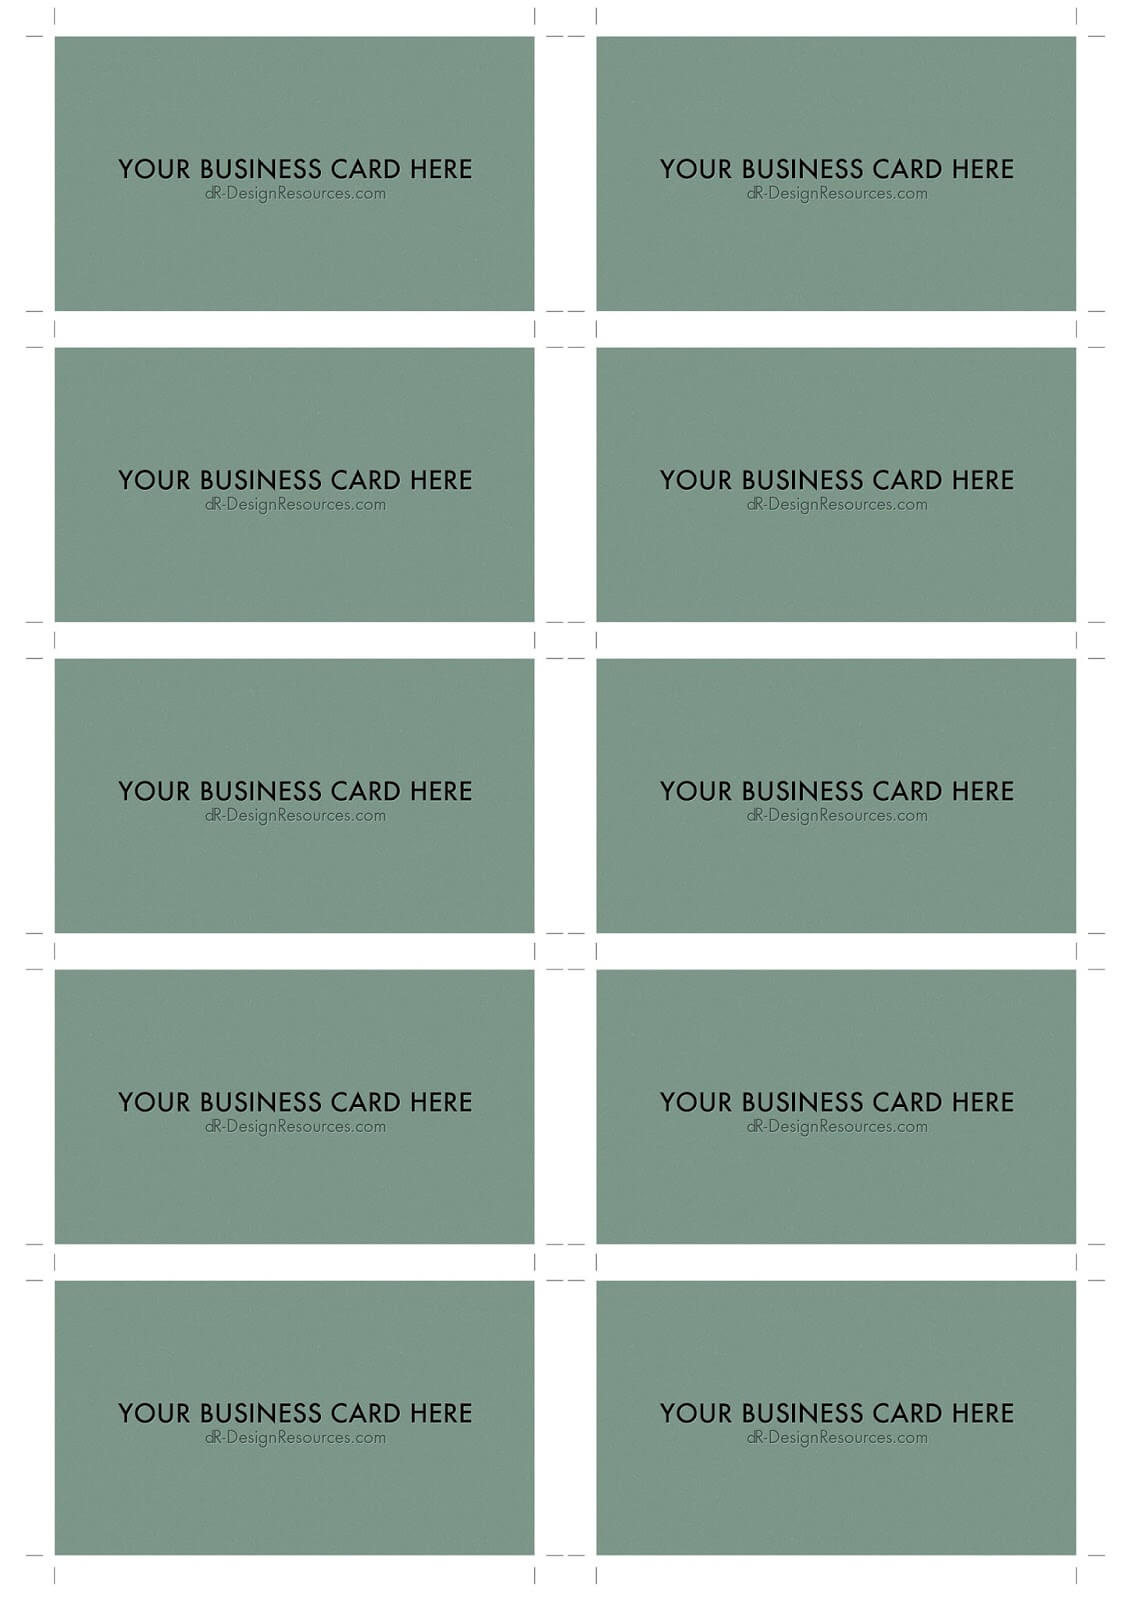 A4 Business Card Template Psd (10 Per Sheet) | Dr Design Pertaining To Business Card Size Template Psd